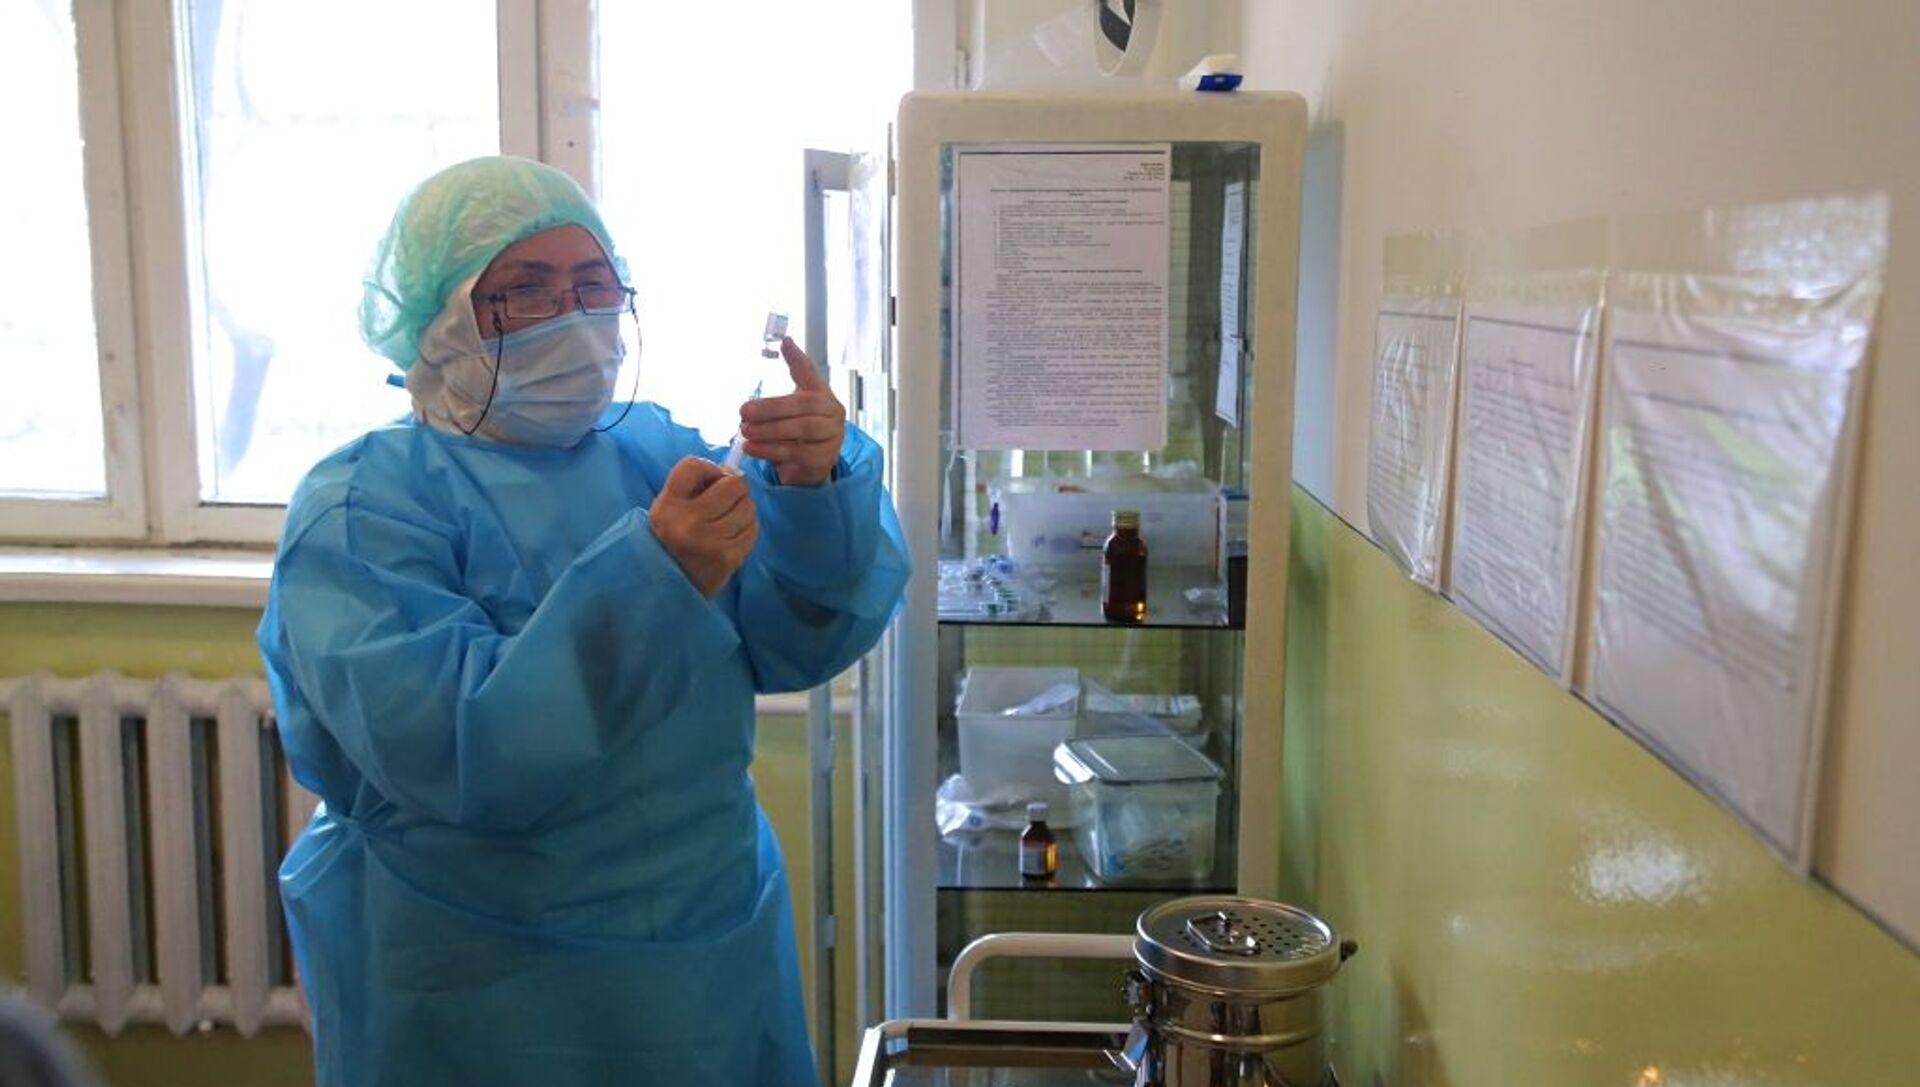 В ЦСМ №1 начался первый этап вакцинации от COVID-19 медицинских работников города Ош. 29 марта 2021 года - Sputnik Кыргызстан, 1920, 29.03.2021